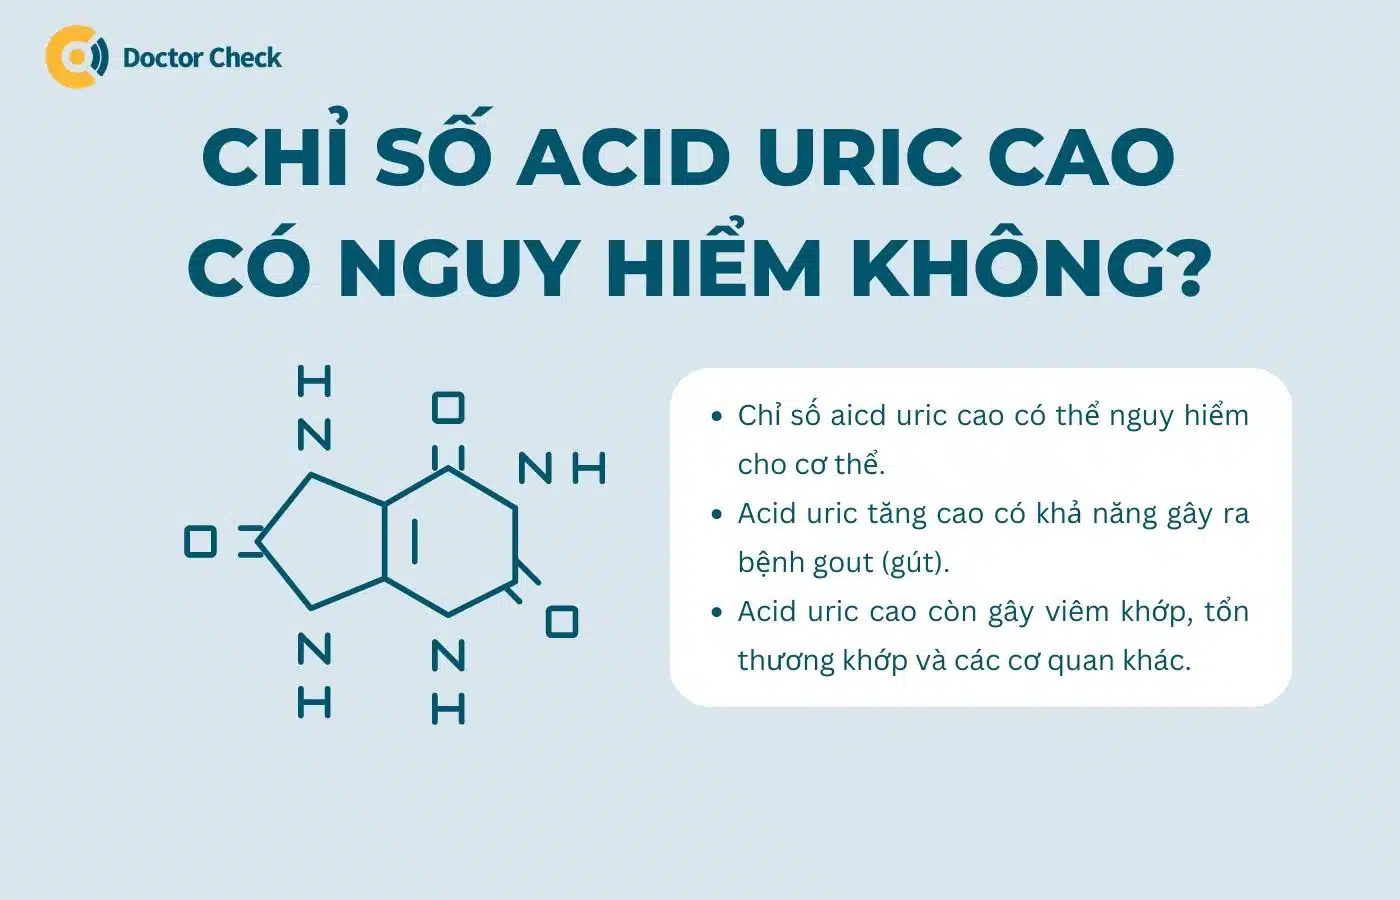 Chỉ số acid uric cao có nguy hiểm không?